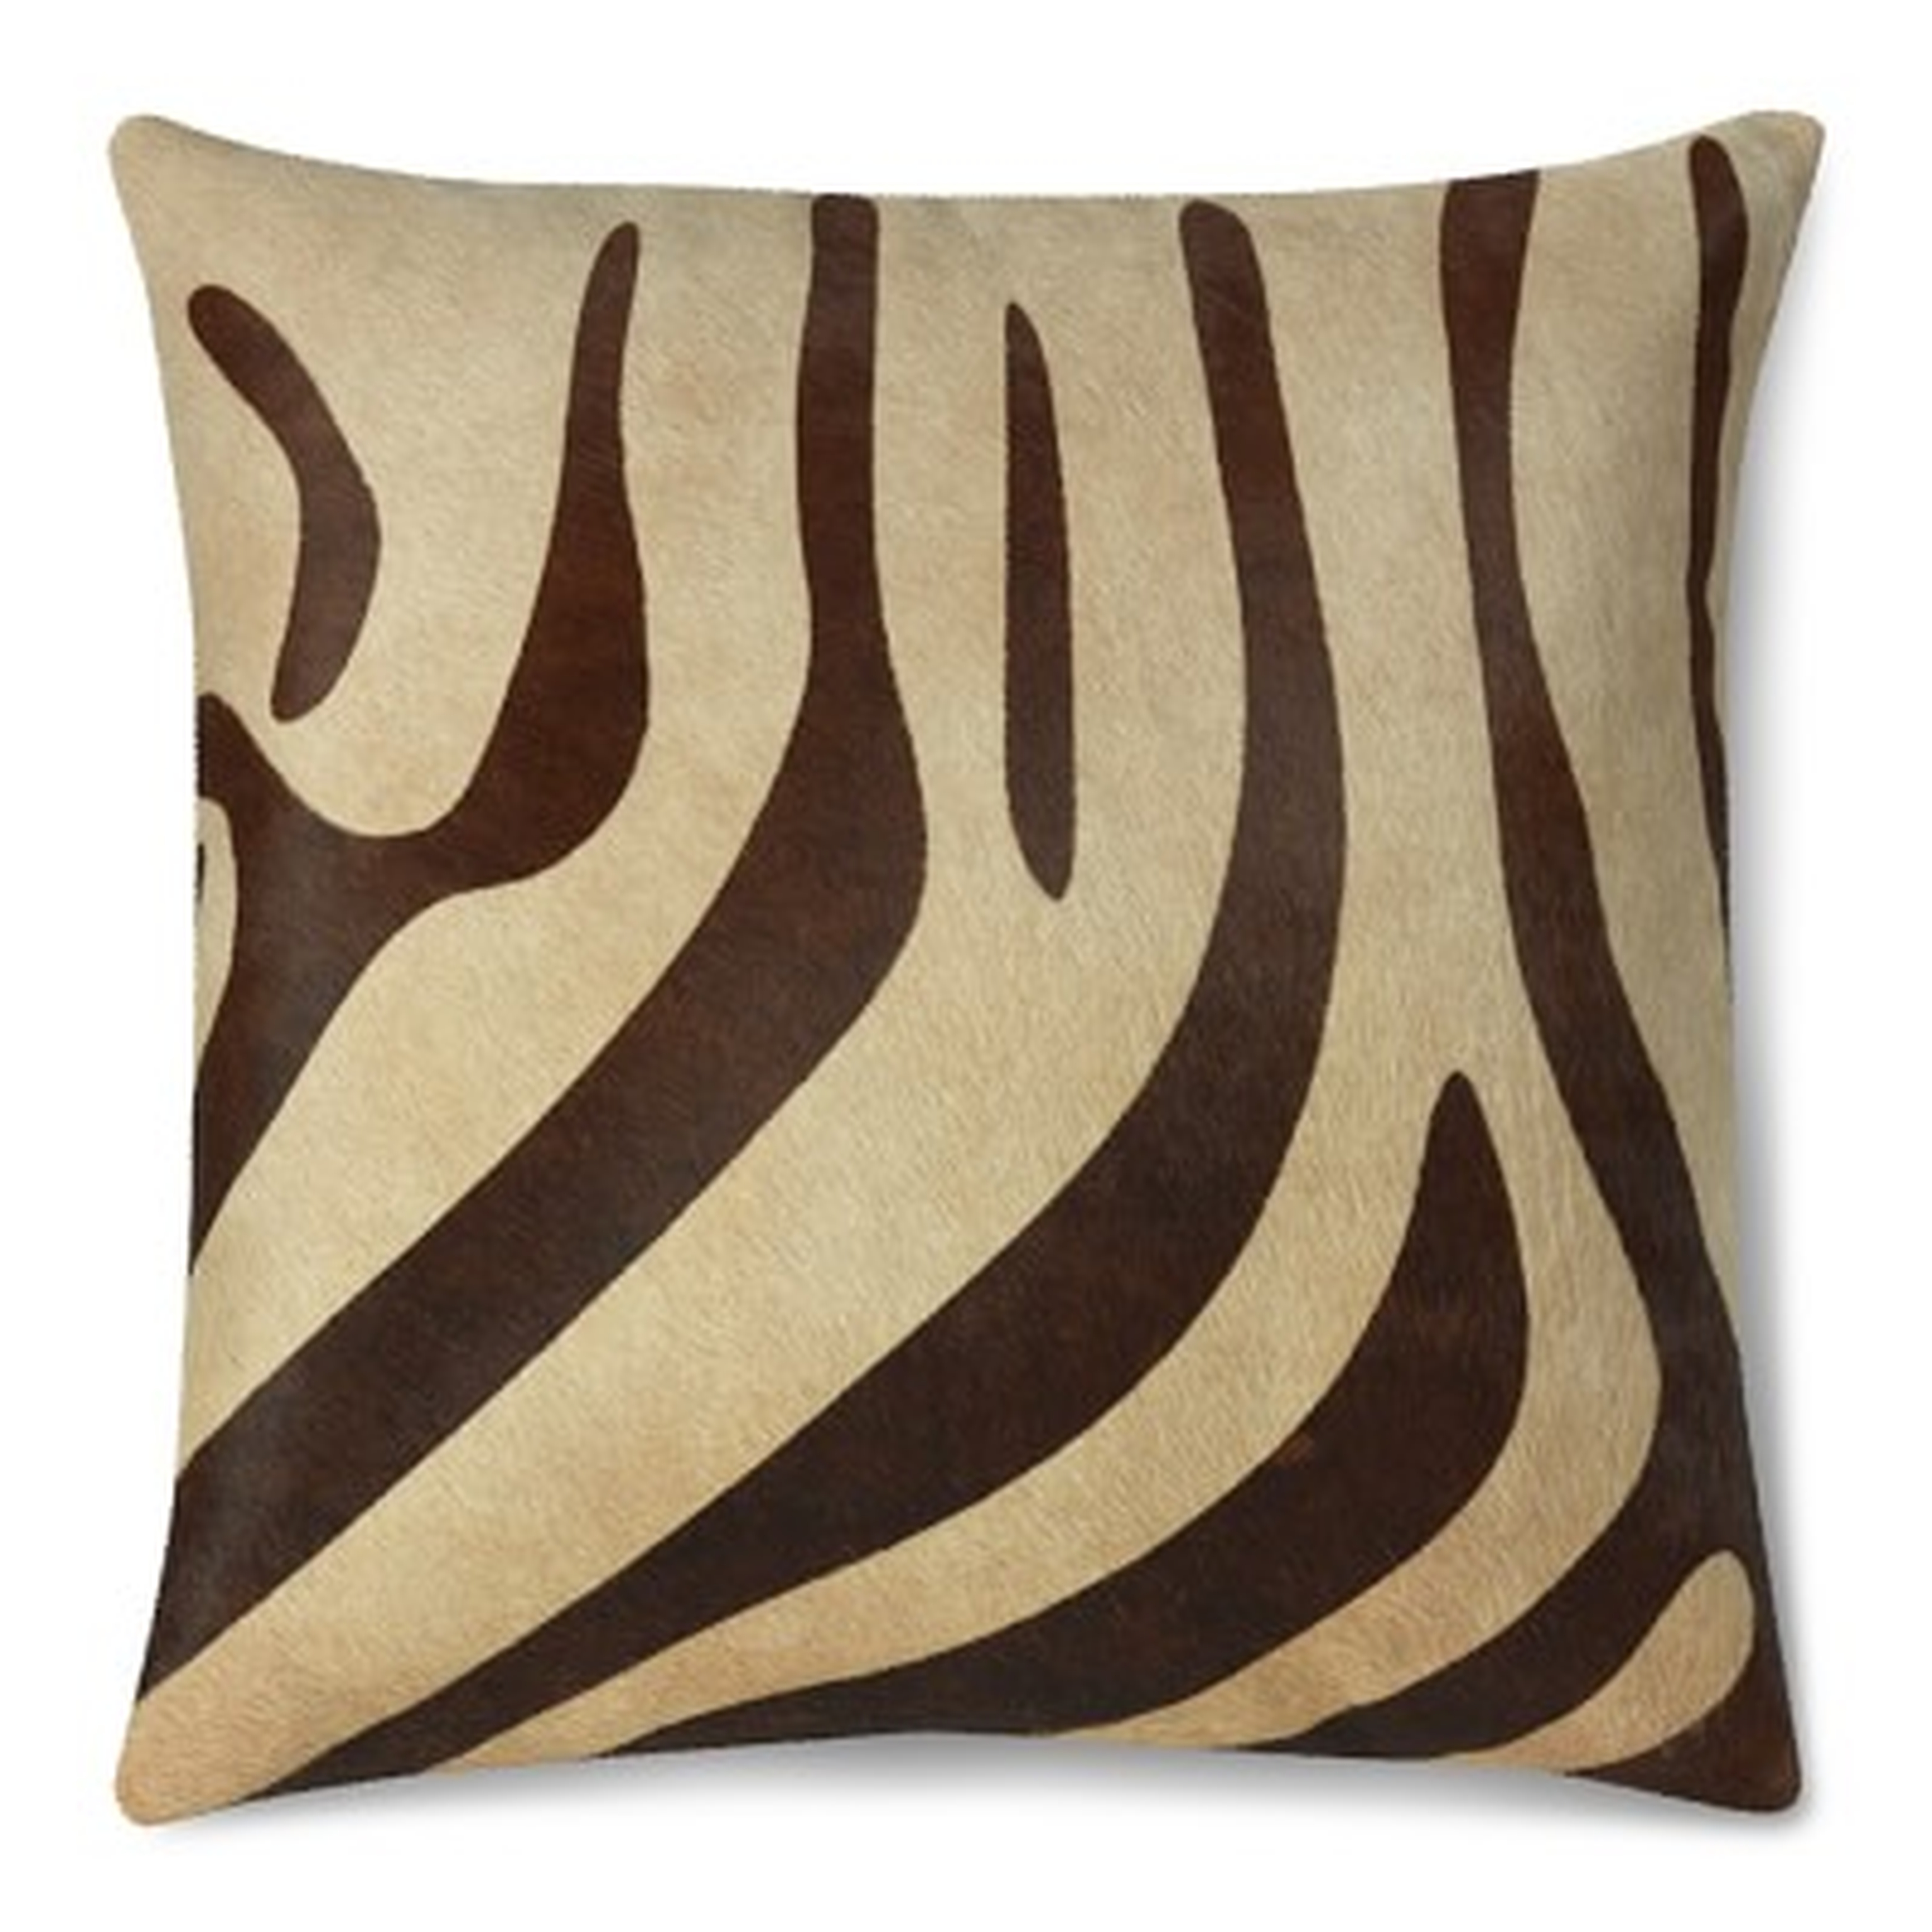 Printed Zebra Hide Pillow Cover, 22" X 22" - Williams Sonoma